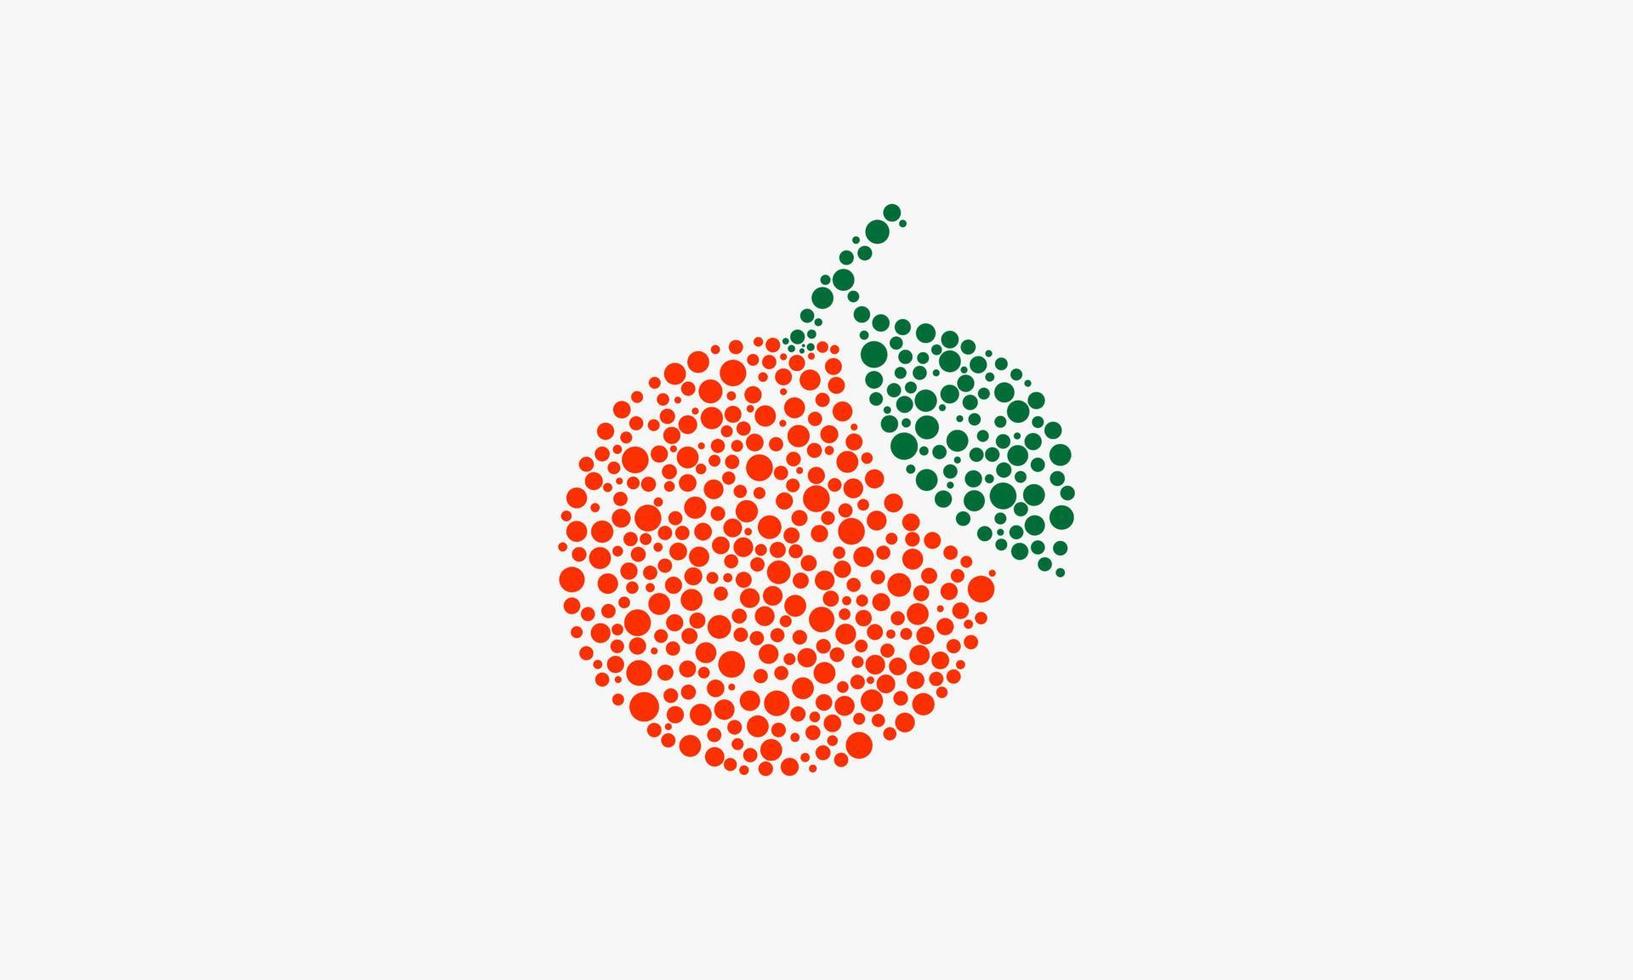 laranja de fruta de forma pontilhada. ilustração em vetor design gráfico.